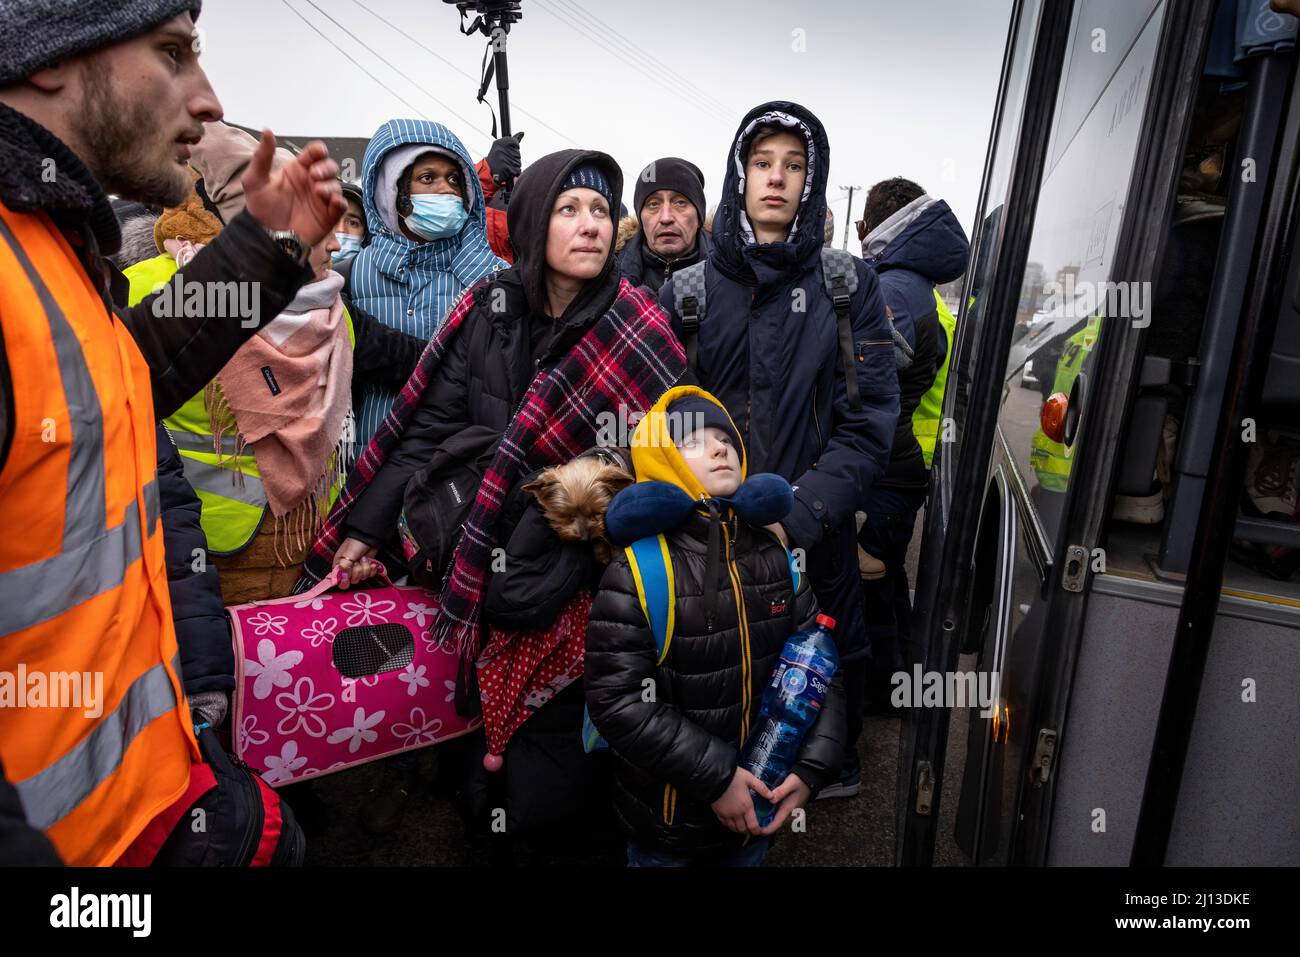 Ankunft von Flüchtlingen aus der Ukraine am polnisch-ukrainischen Grenzübergang in Medyka. Hier werden die Flüchtlinge mit warmen Speisen und Kleidung versorgt. Von hier aus werden sie per Bus zu großen Standorten oder Sammelunterkünften befördert. Ausländische Helfer bieten auch Reisen in andere europäische Länder an. Stockfoto